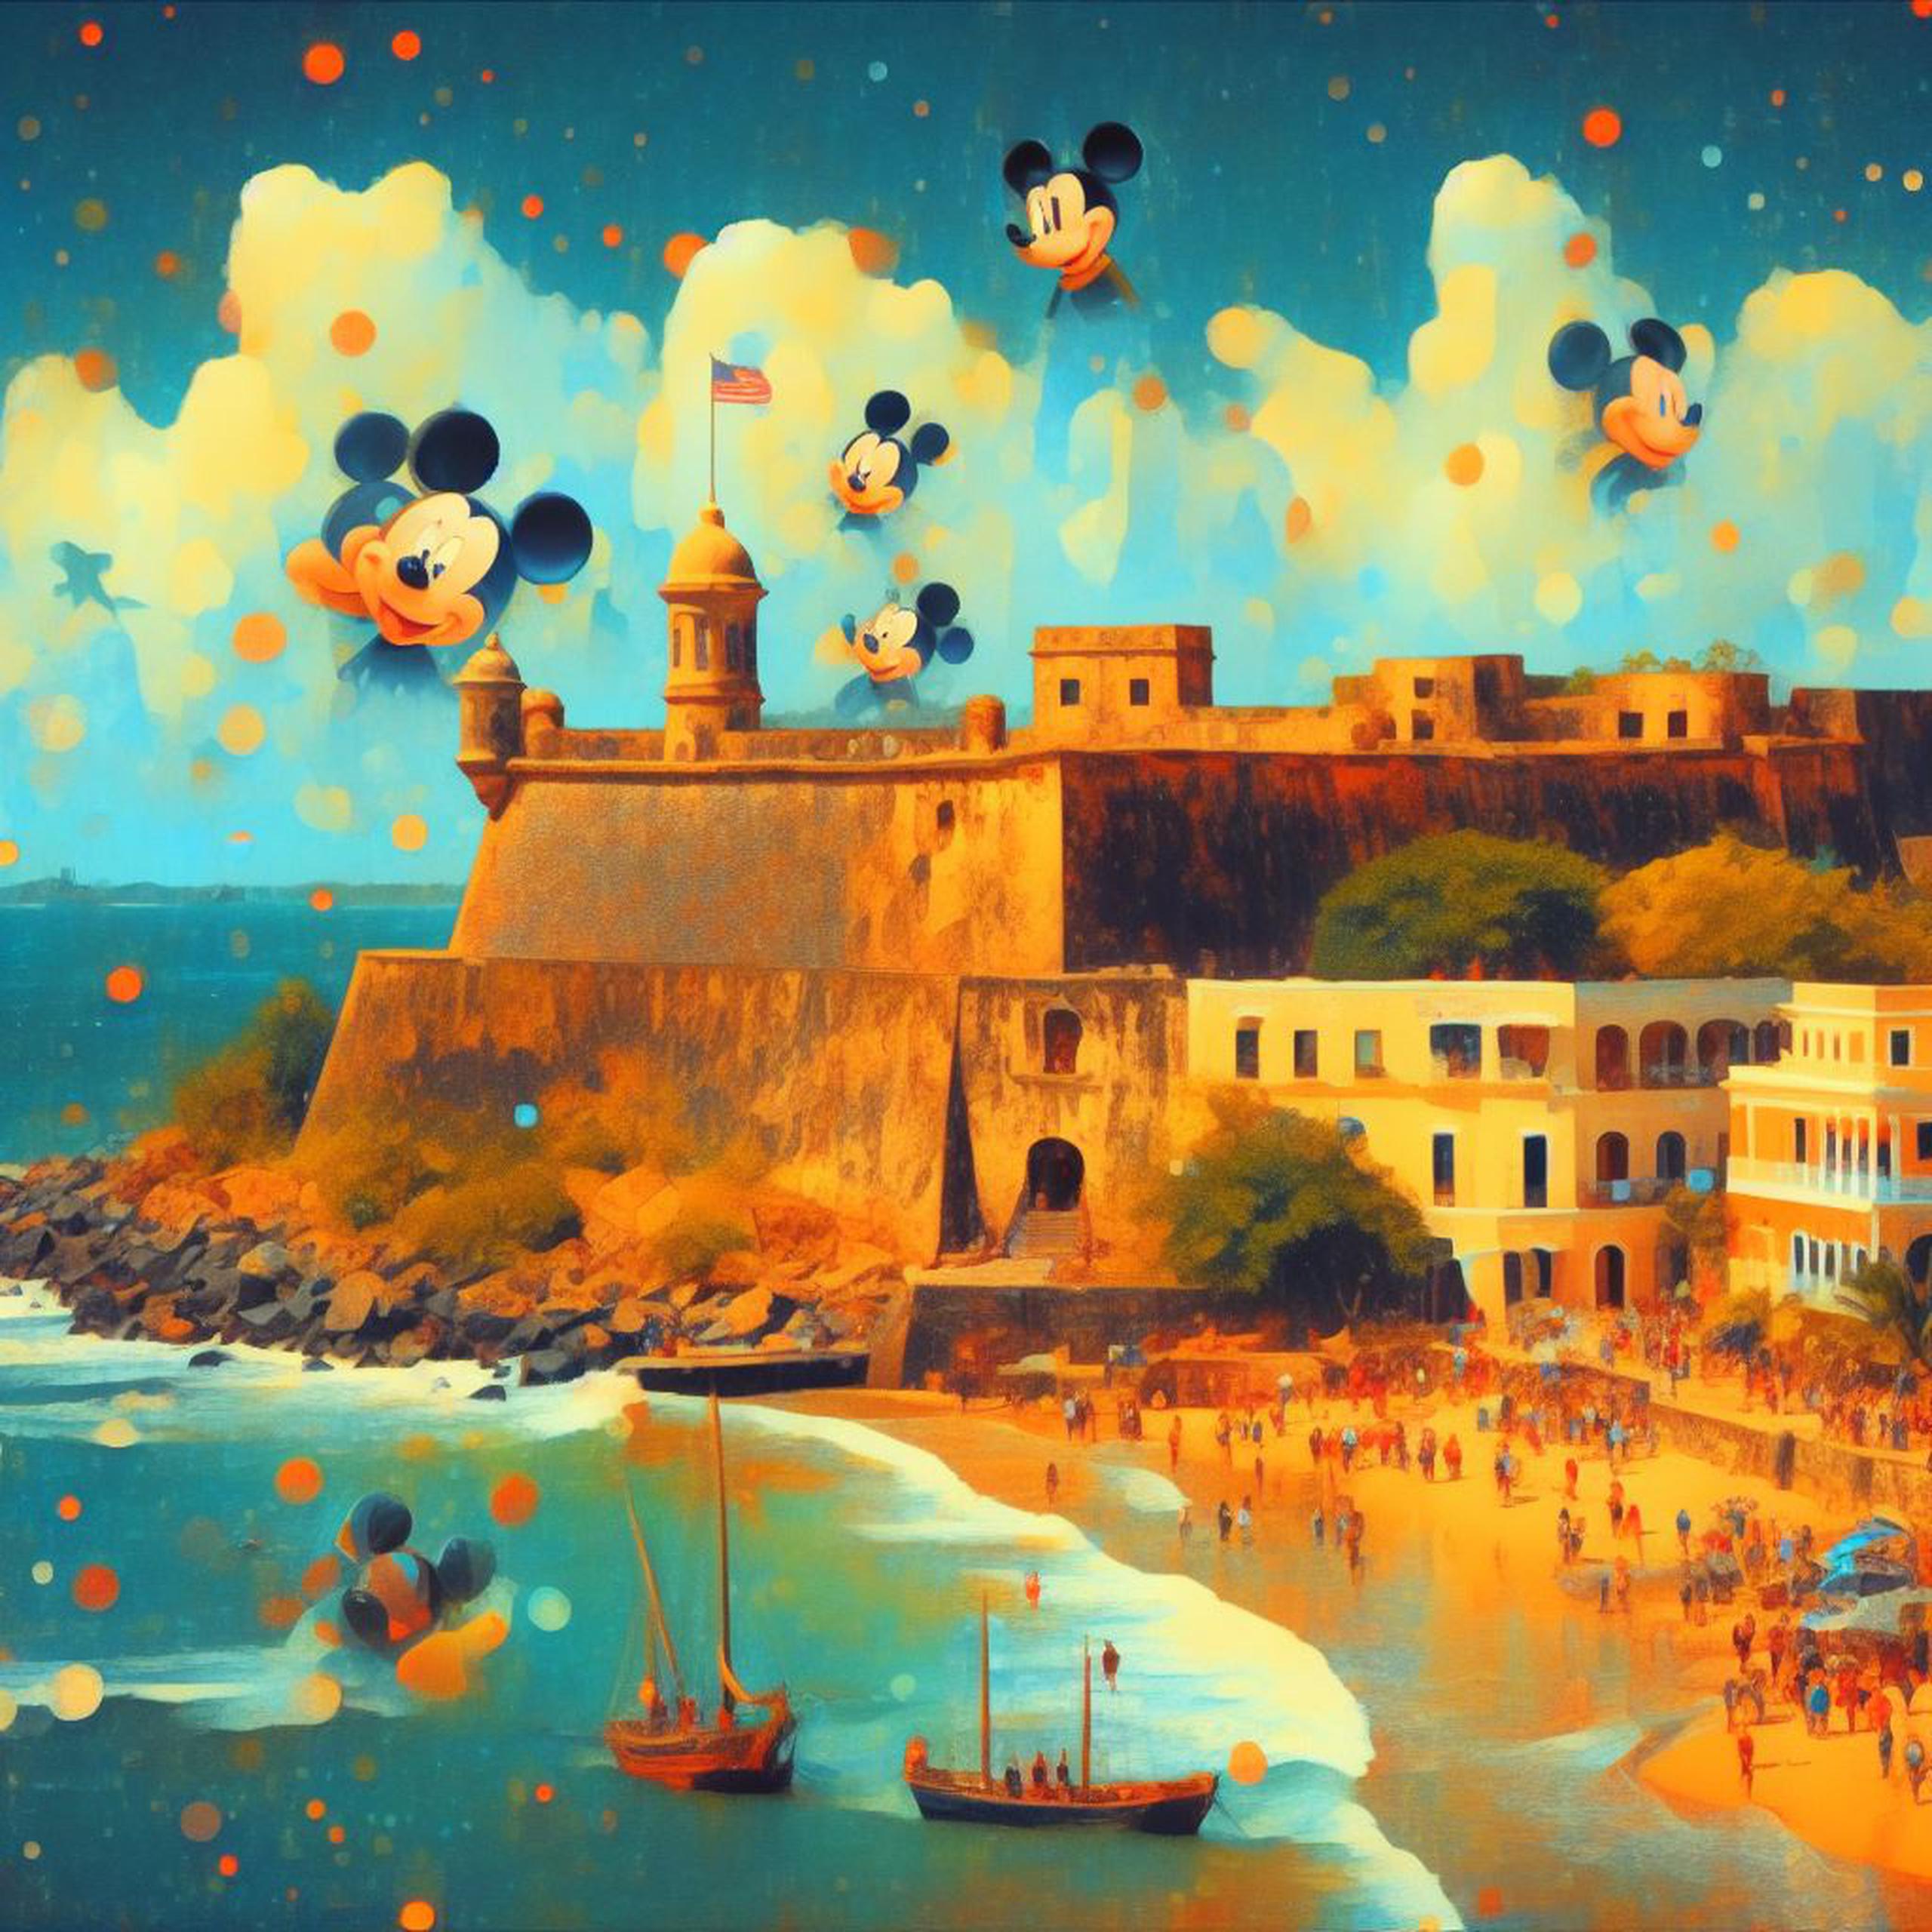 Esta imagen fue producida con el siguiente texto: "Genera una imagen al estilo Pixar de El Morro en Puerto Rico con Mickey Mouse".